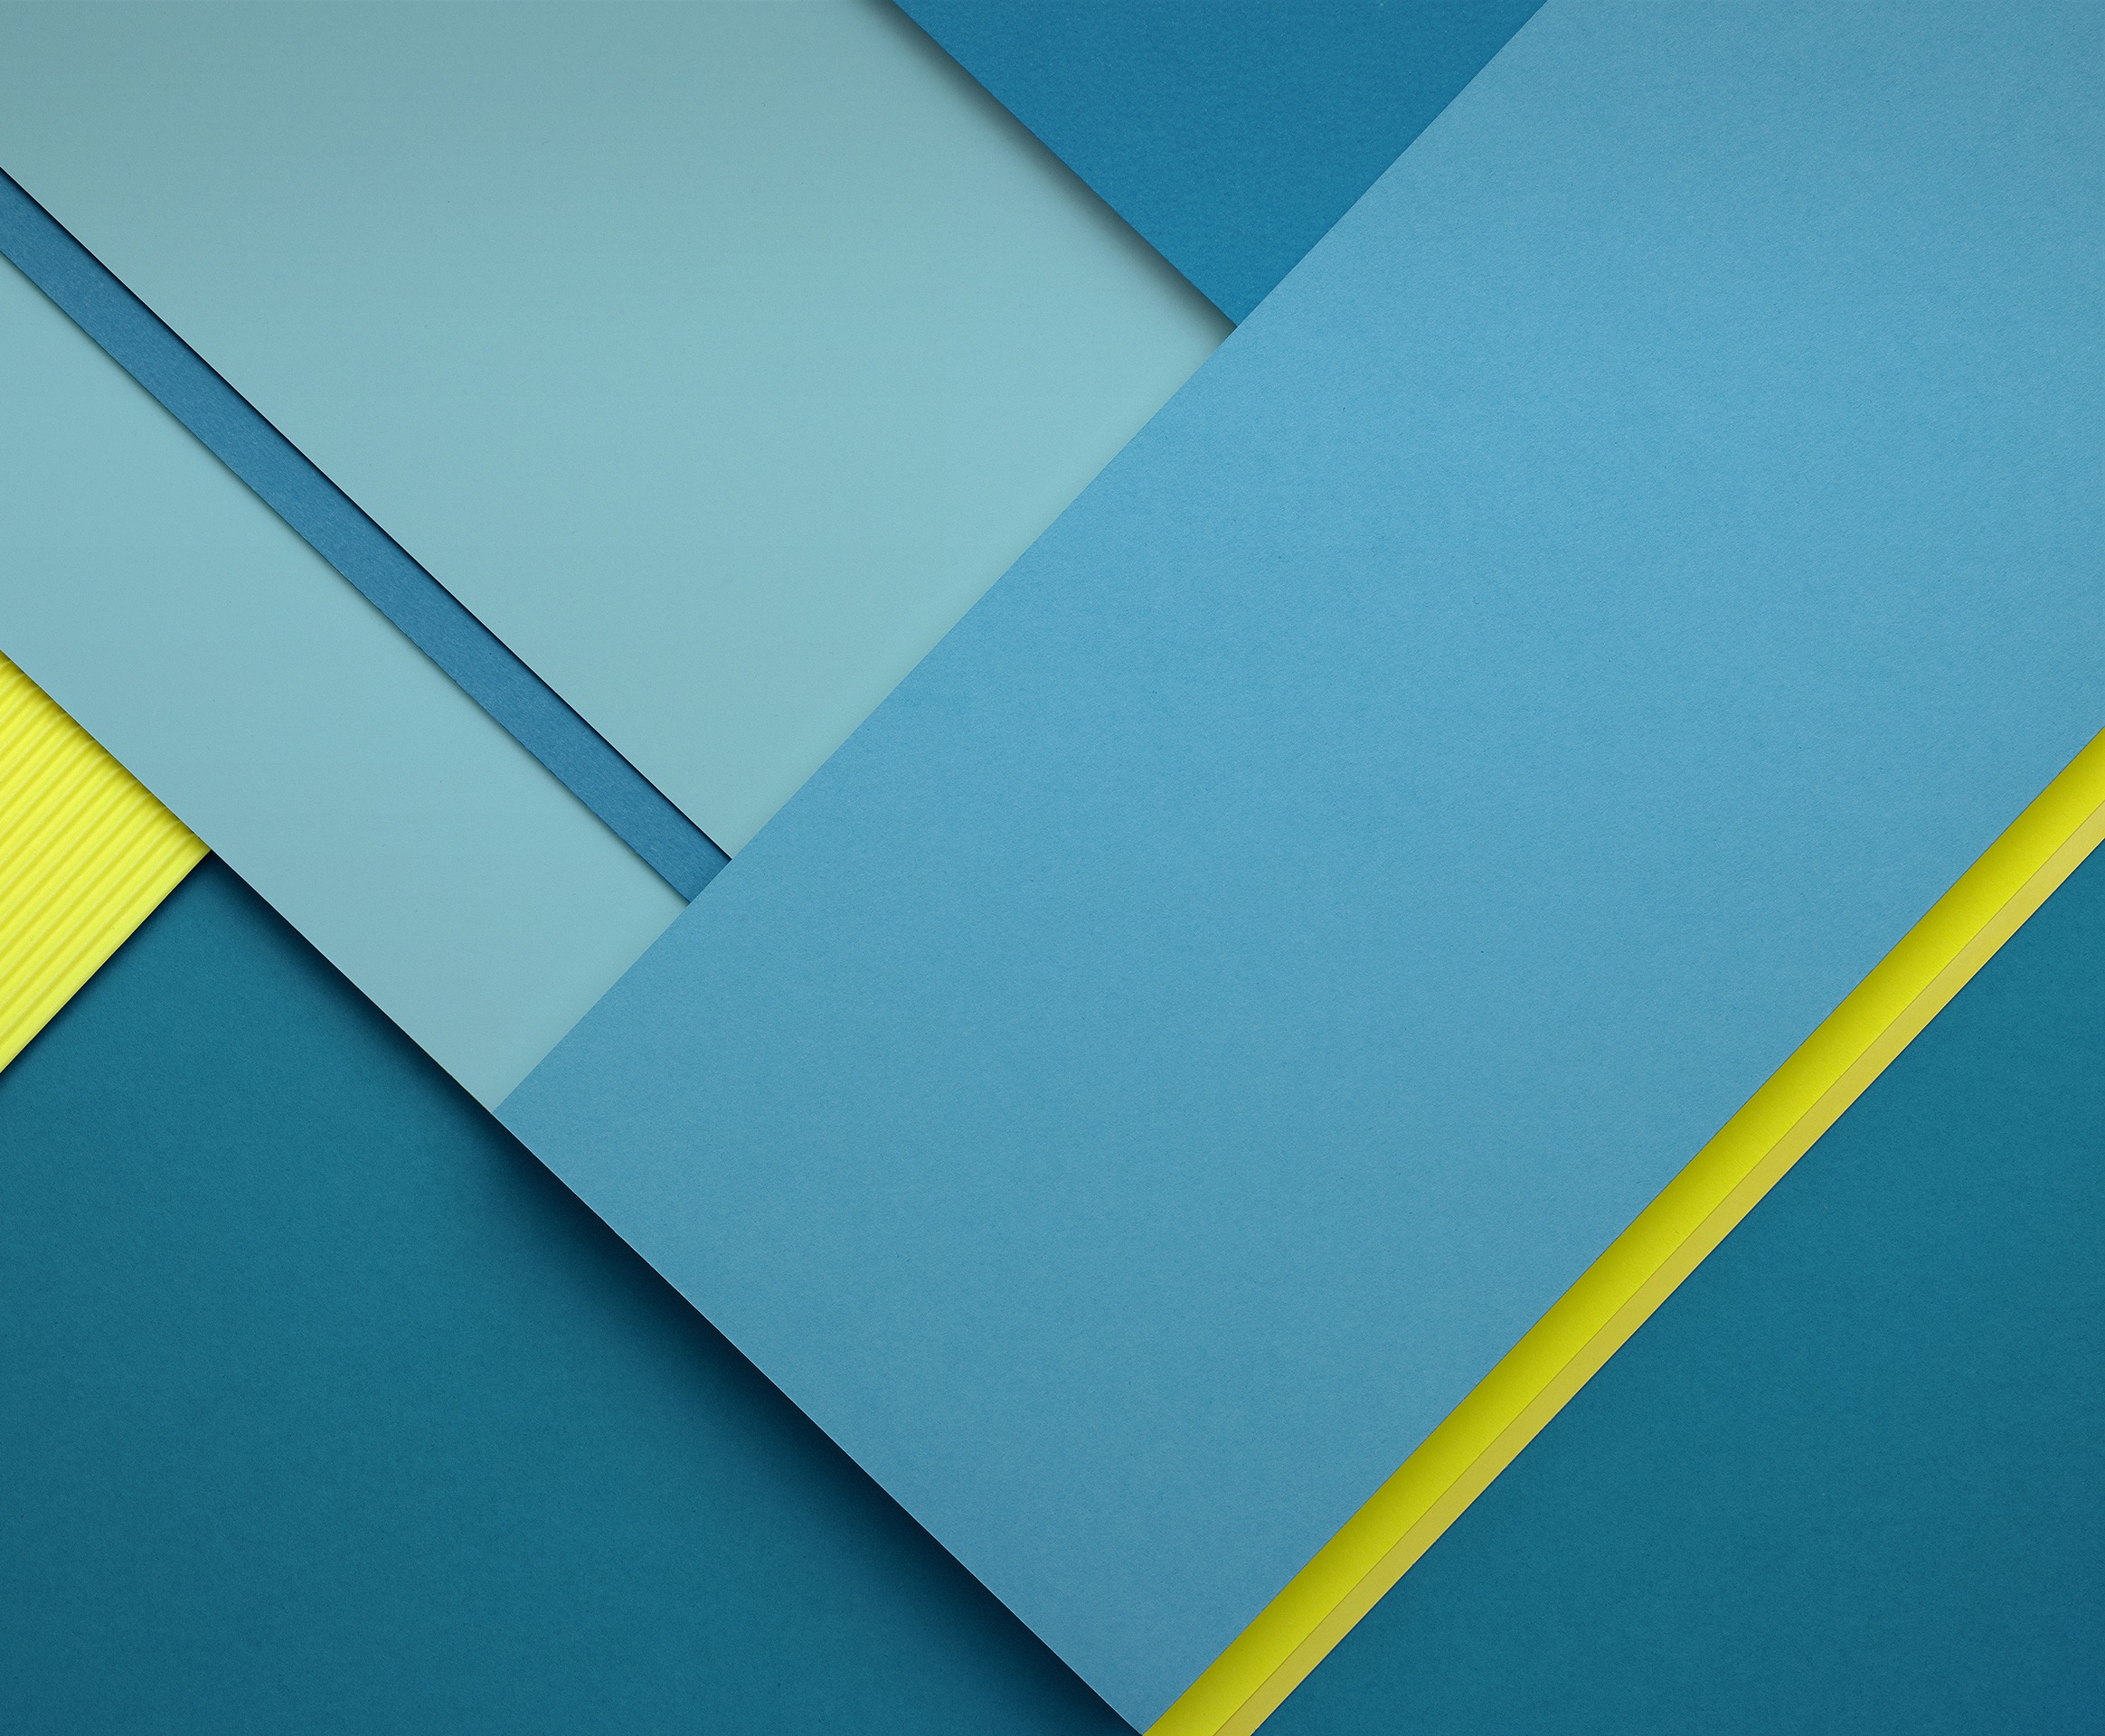 44 Best Nexus 7 Wallpapers On Wallpapersafari